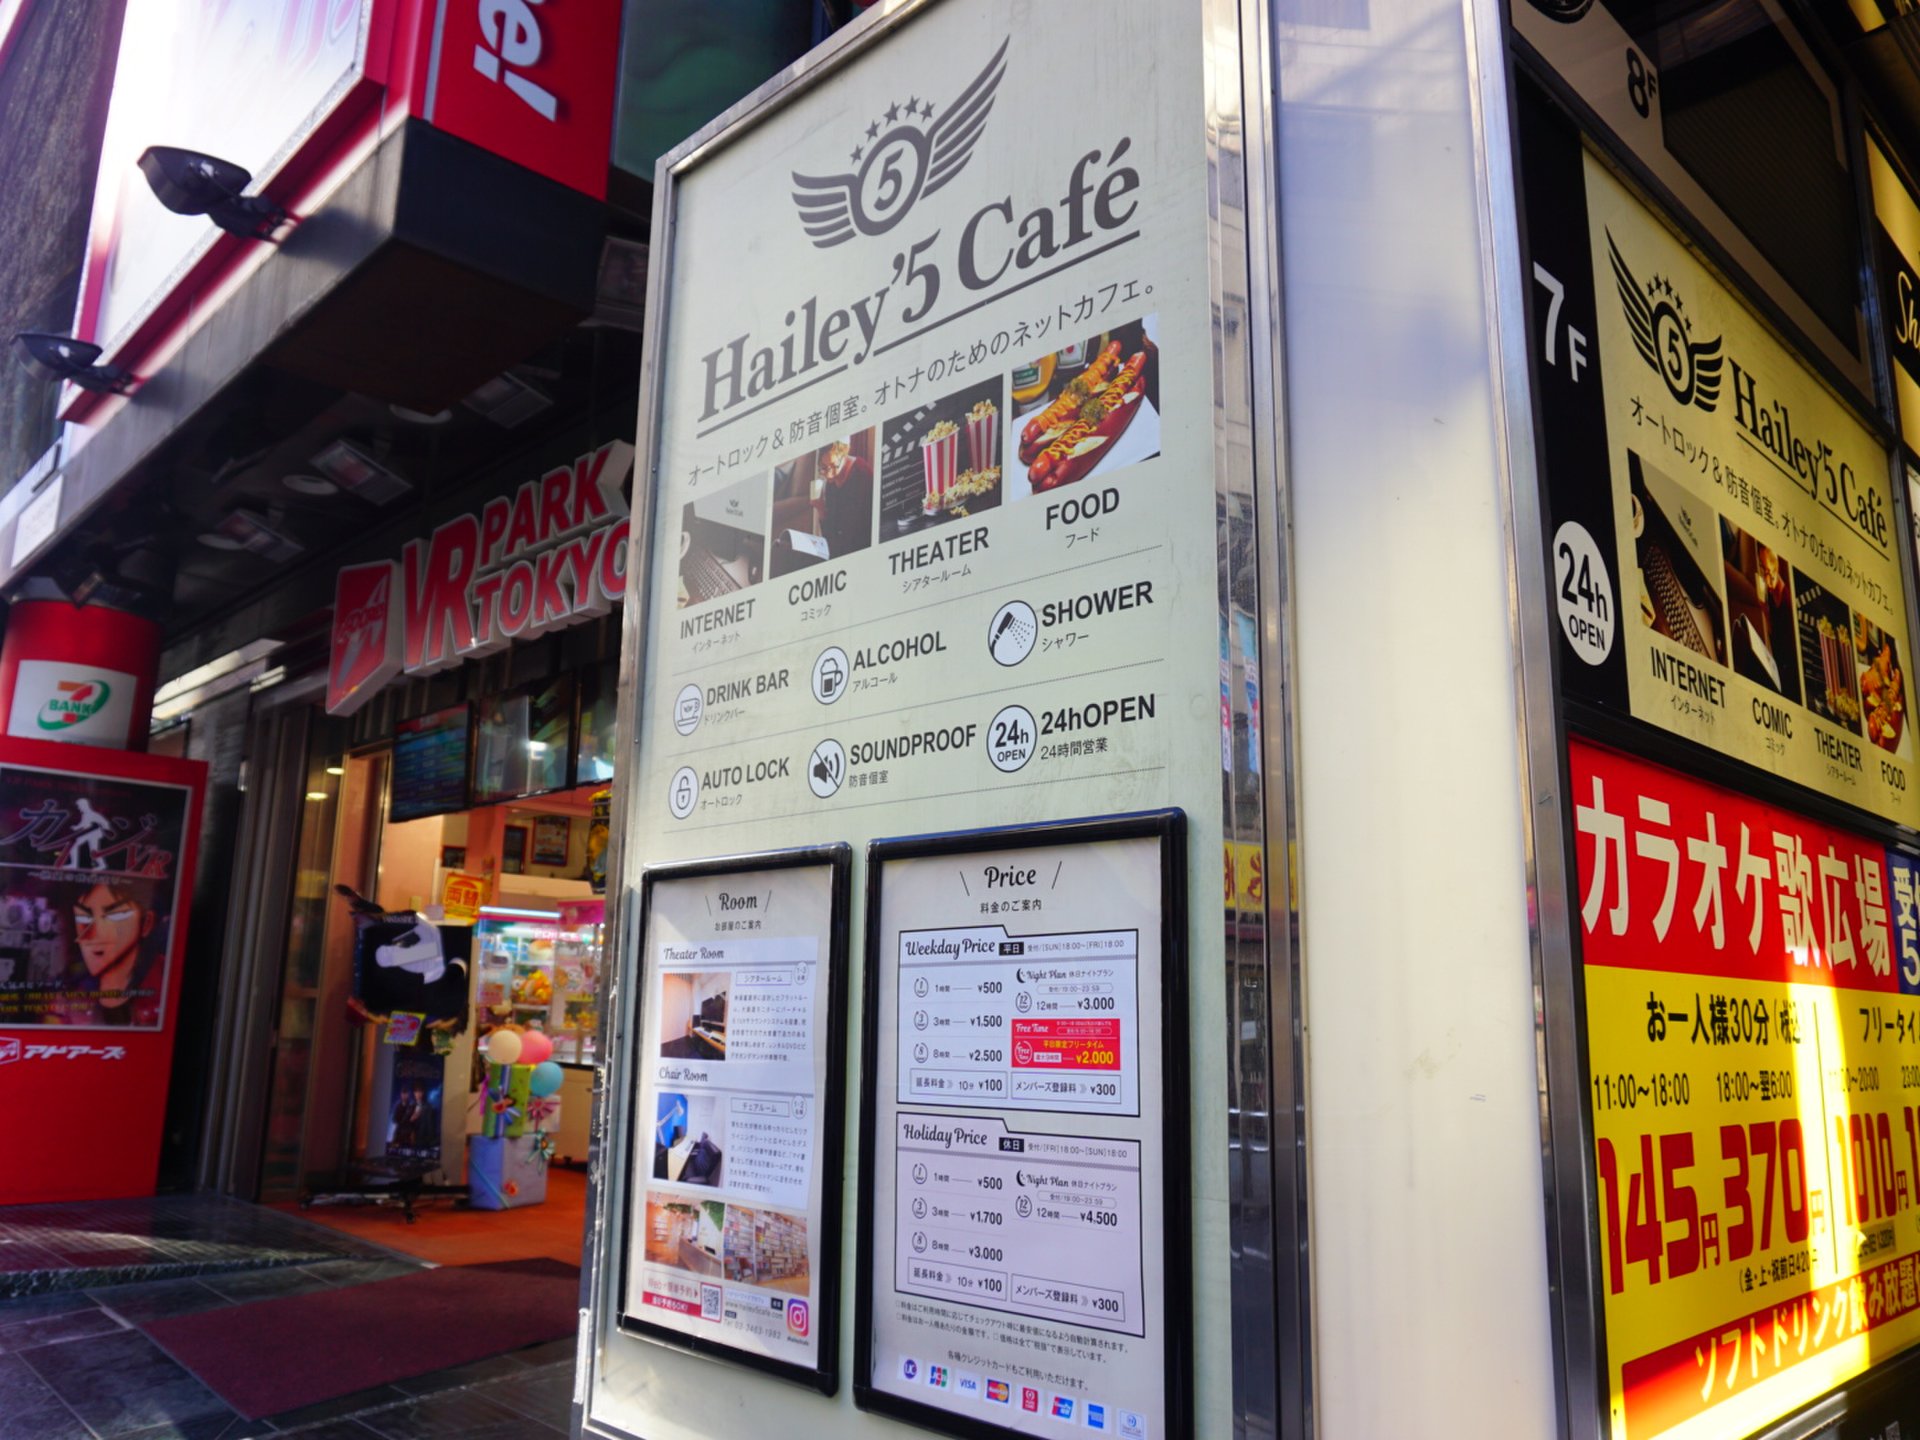 Hailey'5cafe渋谷店